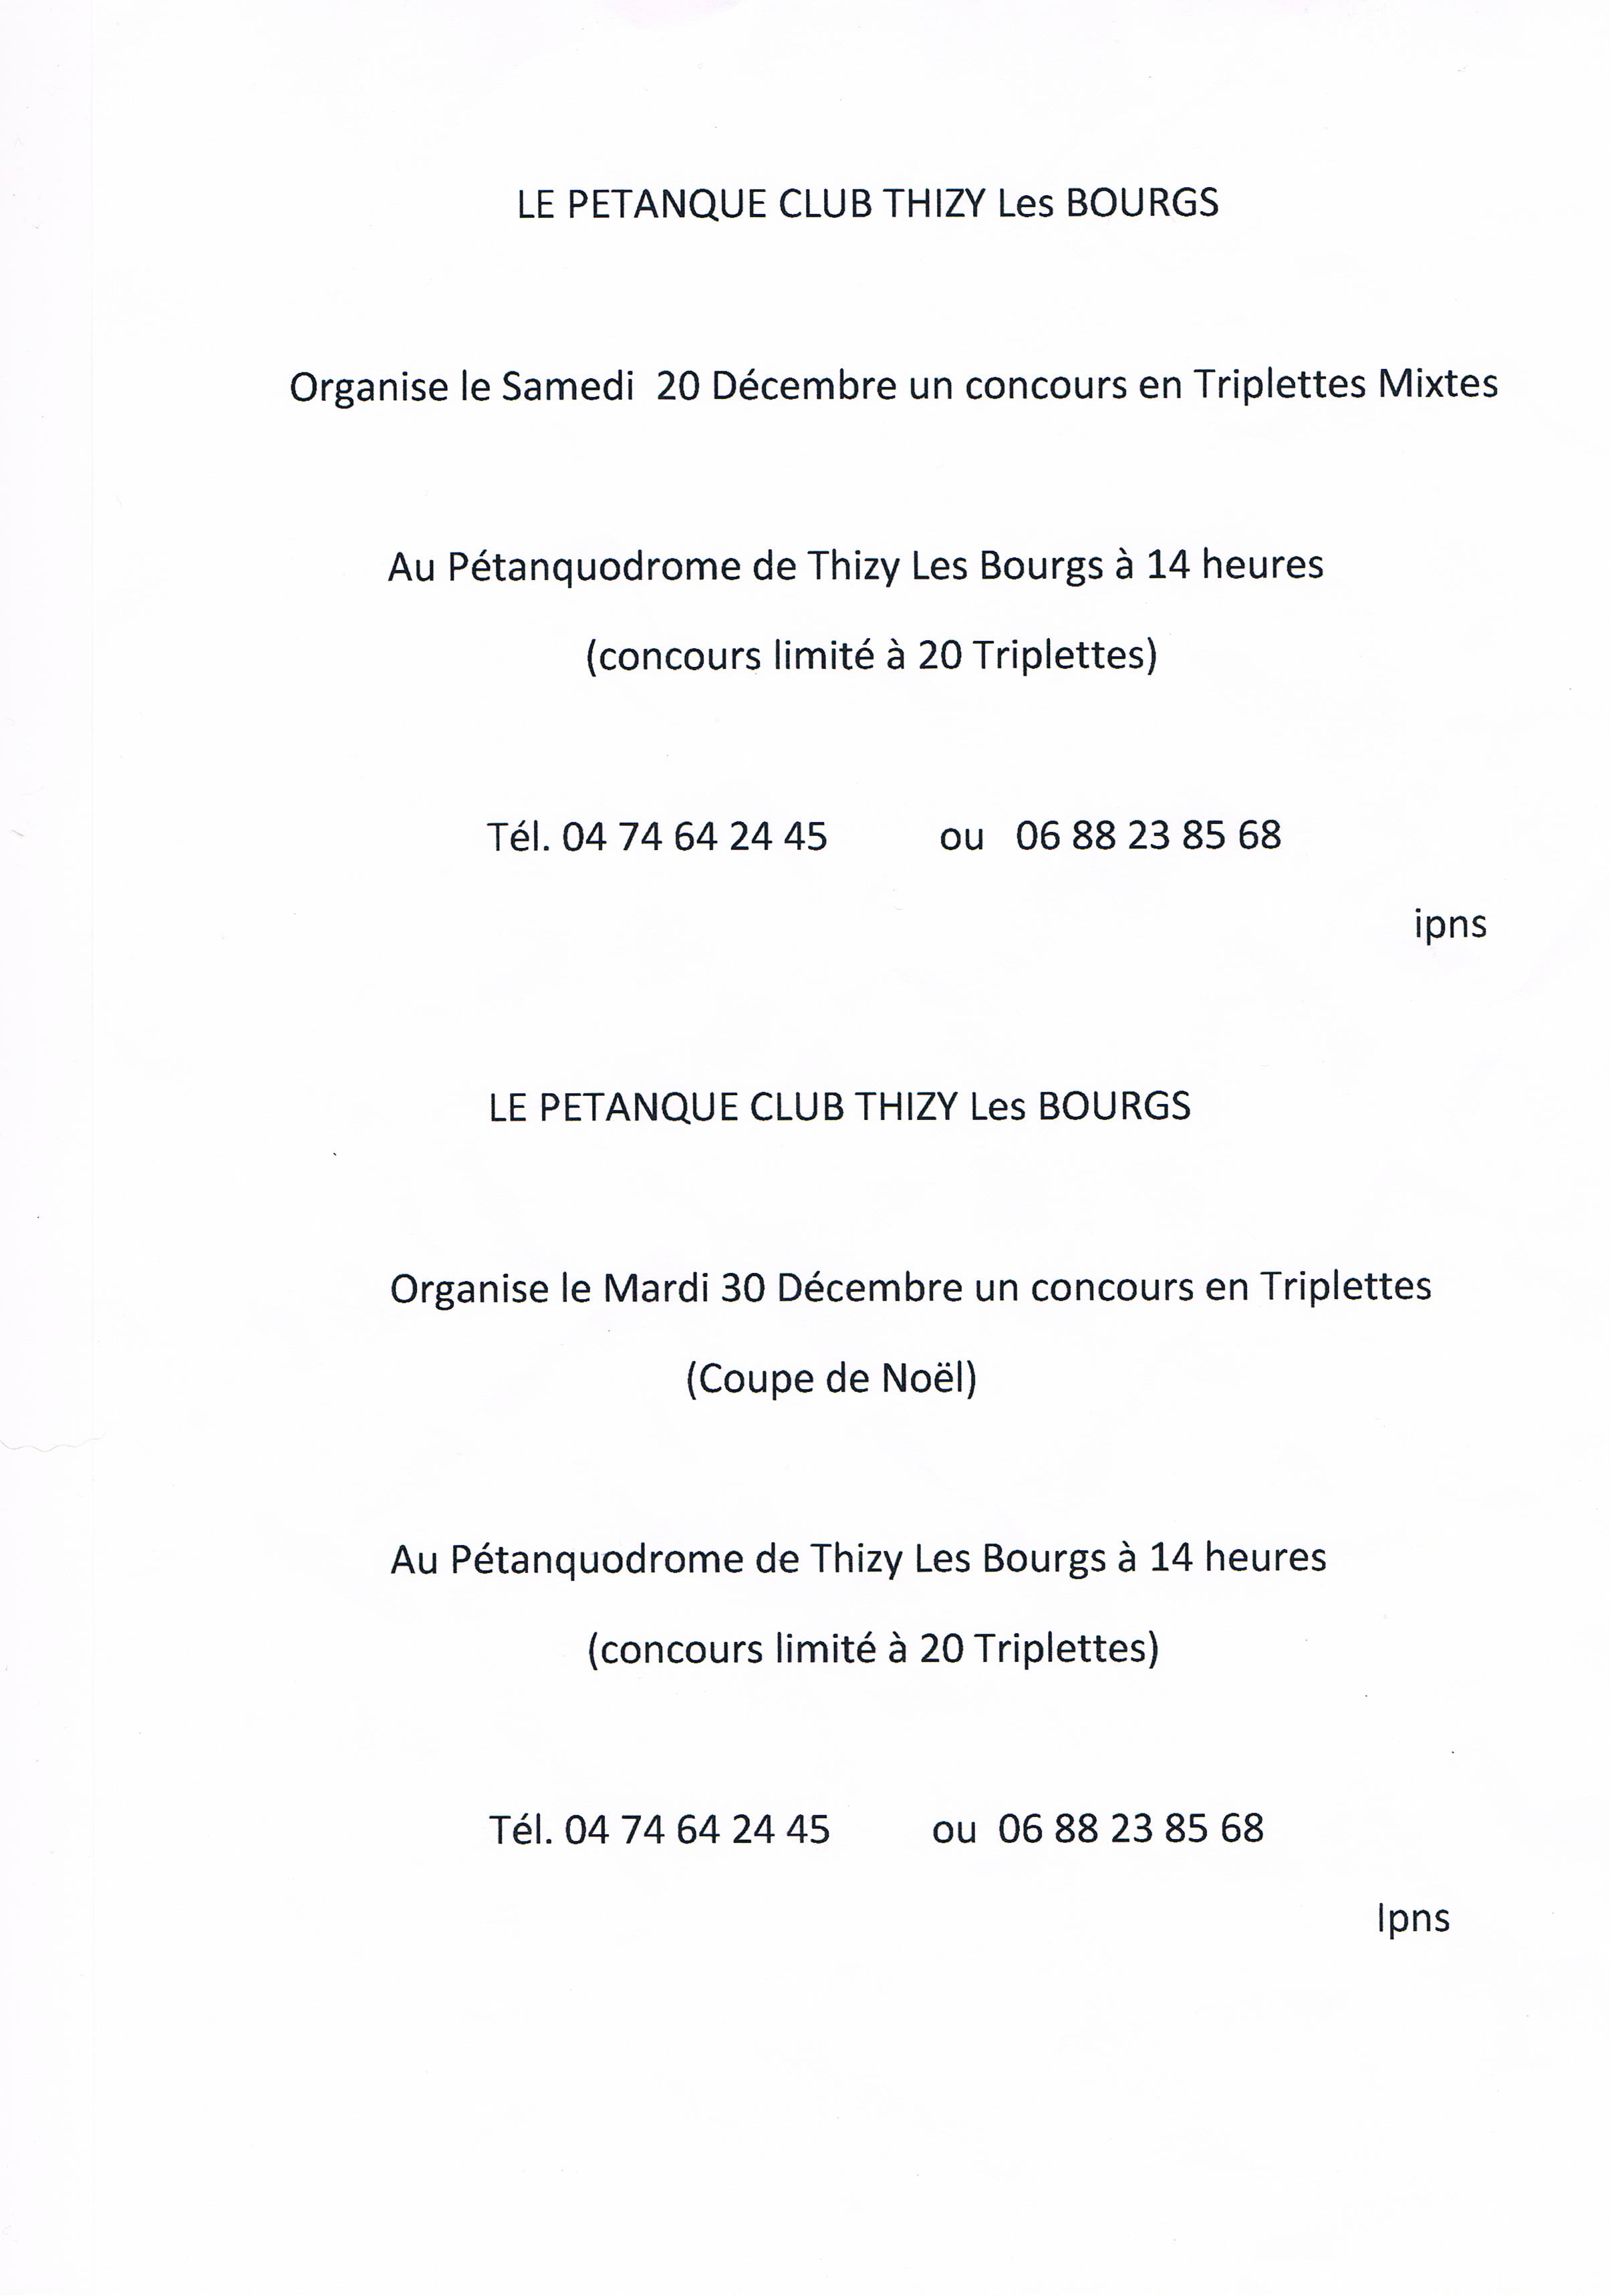 Concours du pétanque club de Thizy-les-bourgs  coupe de noël 2014